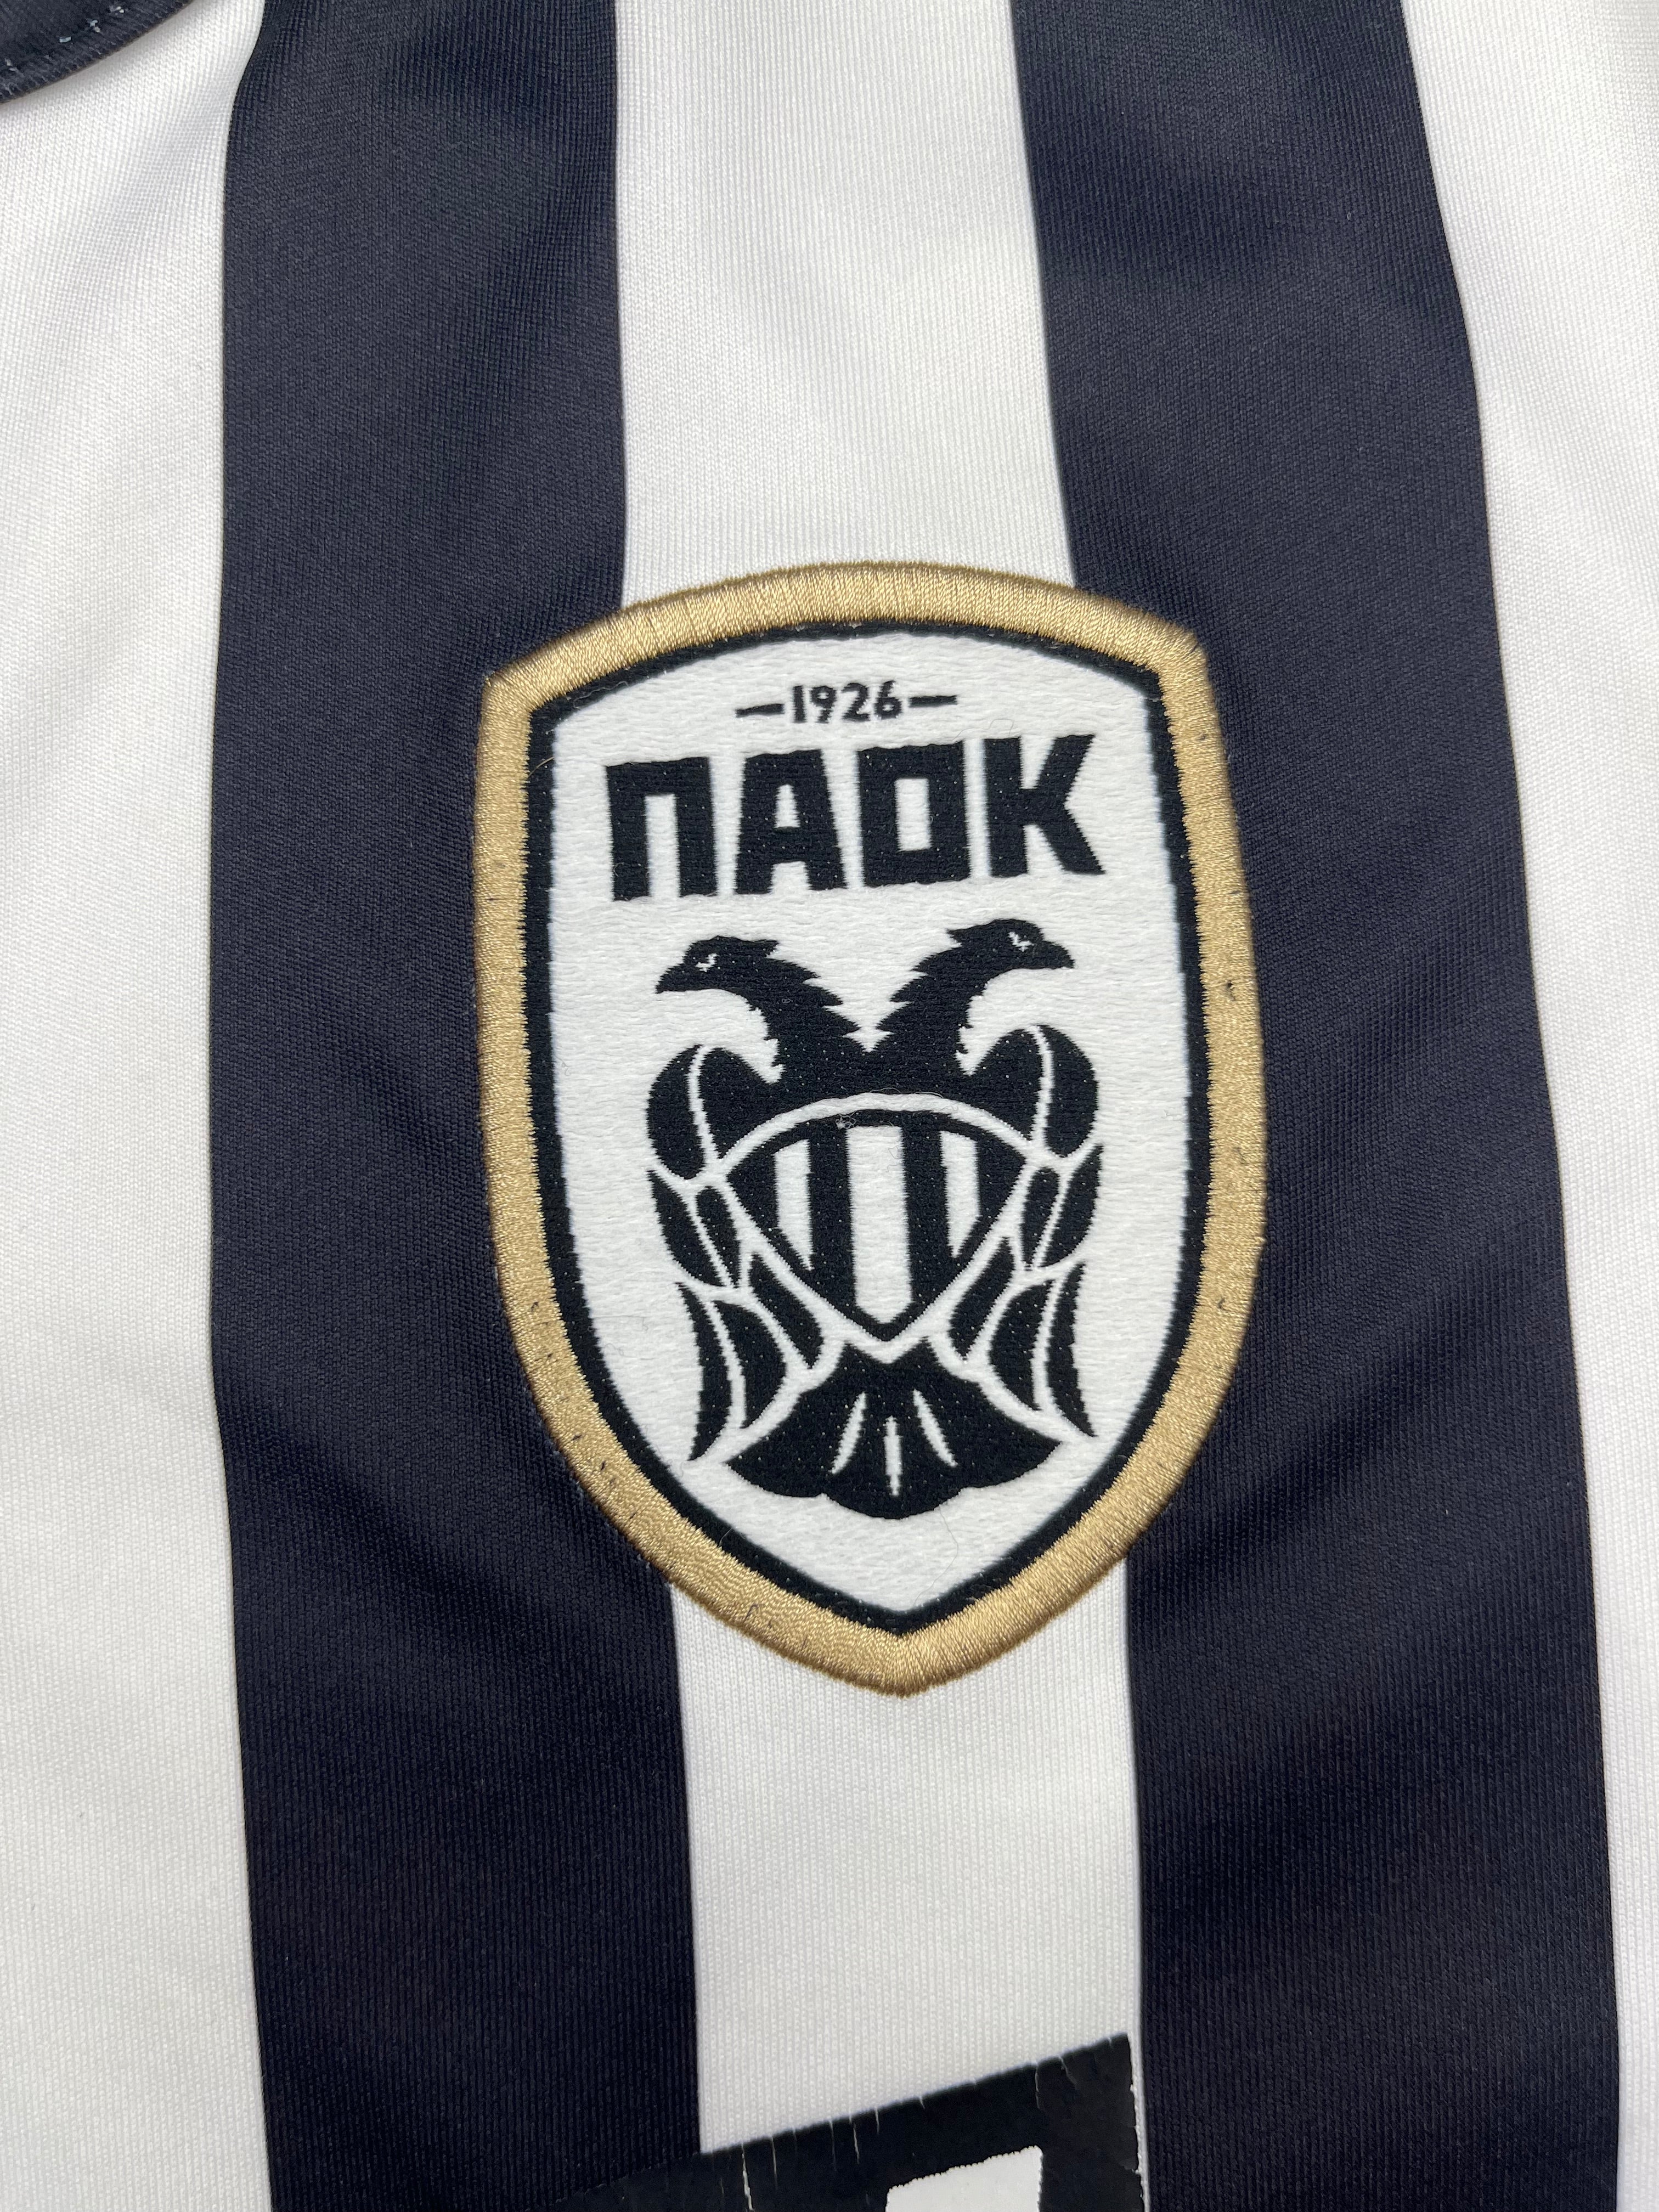 2017/18 PAOK Home Shirt (L) 7.5/10